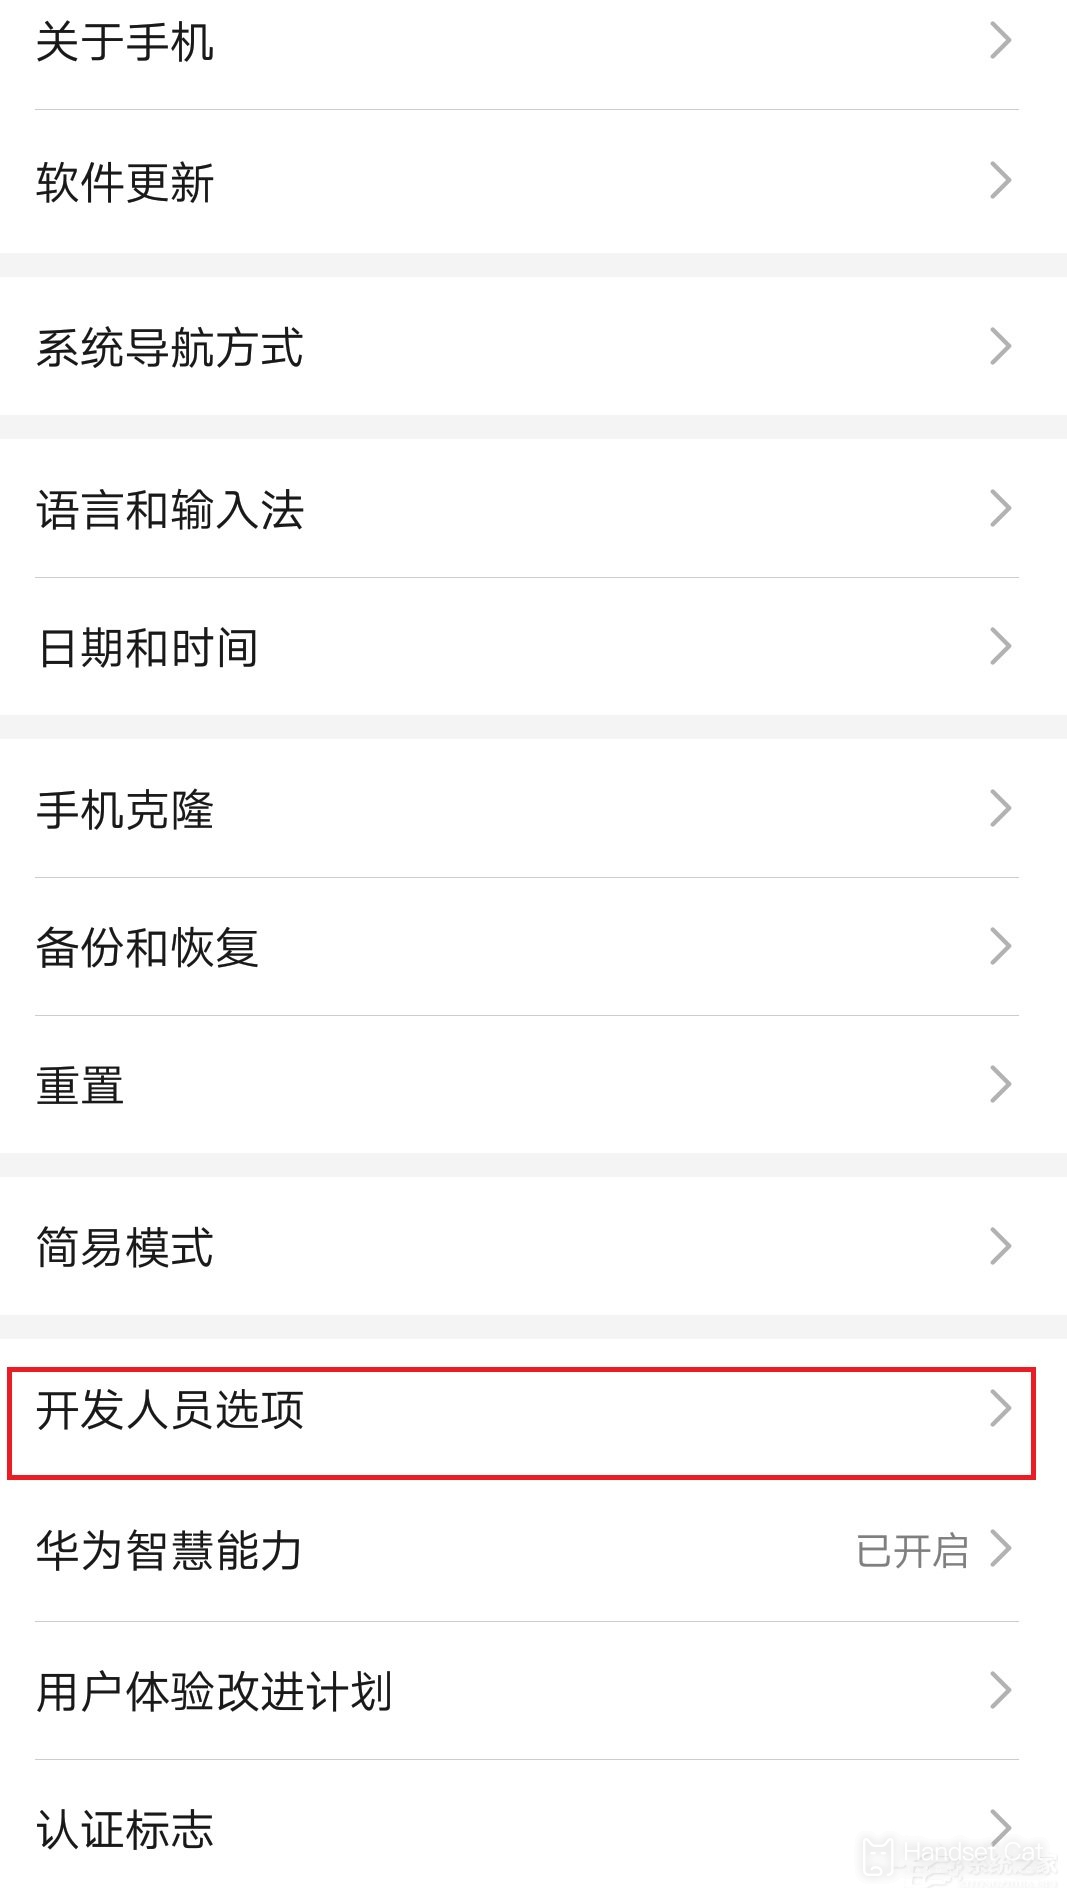 Huawei Changxiang 50 Pro enters the developer mode tutorial